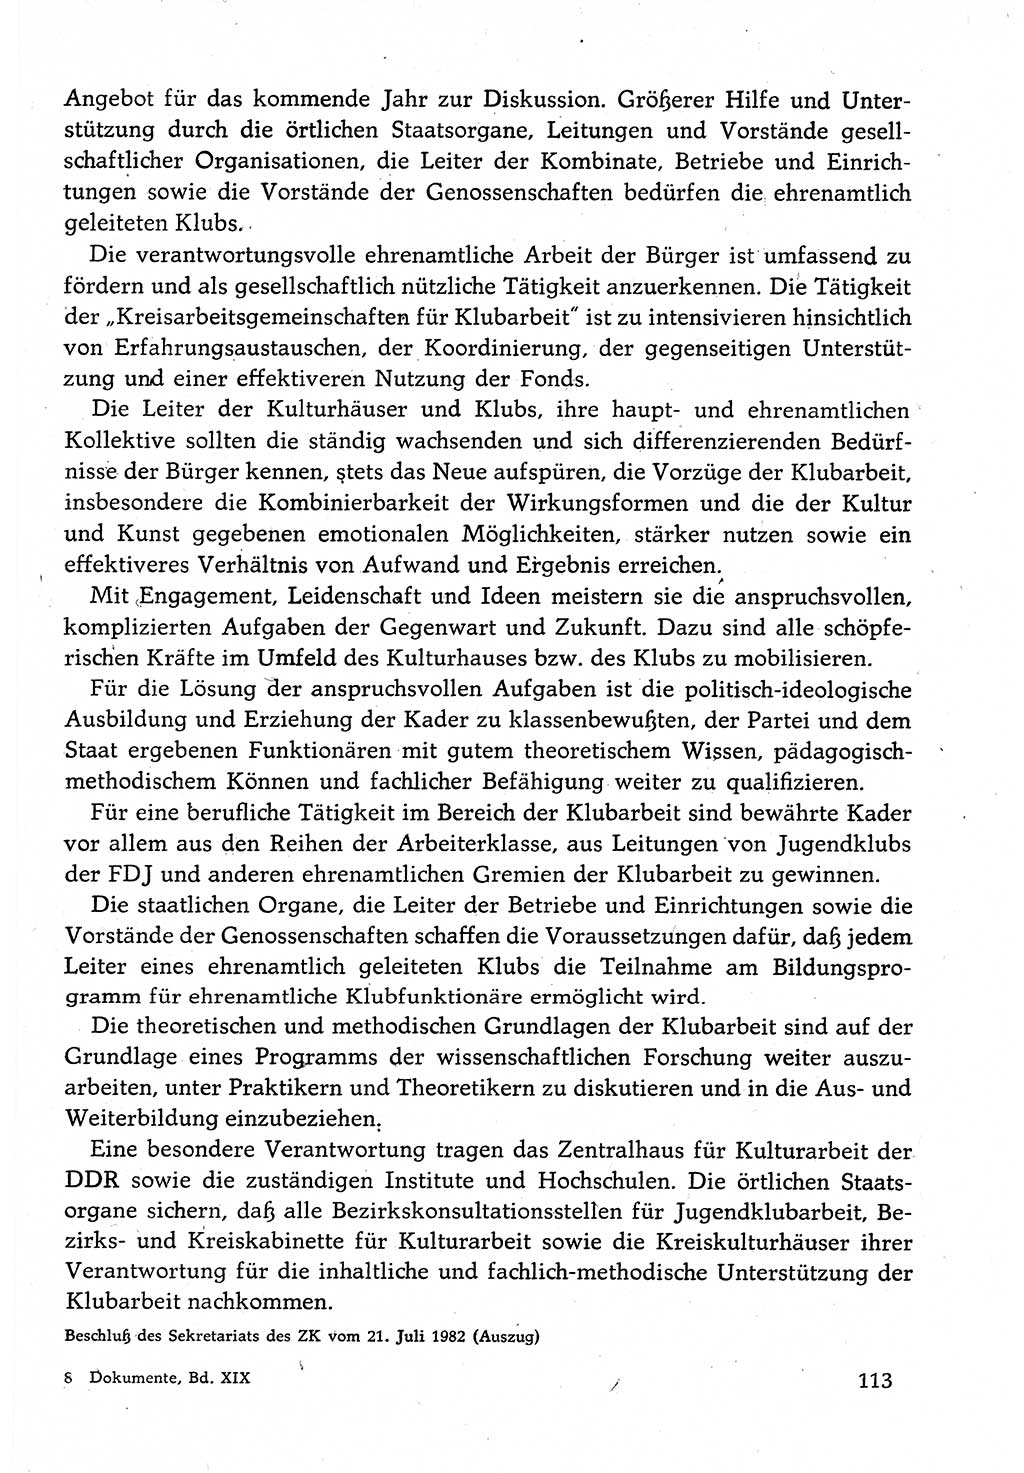 Dokumente der Sozialistischen Einheitspartei Deutschlands (SED) [Deutsche Demokratische Republik (DDR)] 1982-1983, Seite 113 (Dok. SED DDR 1982-1983, S. 113)